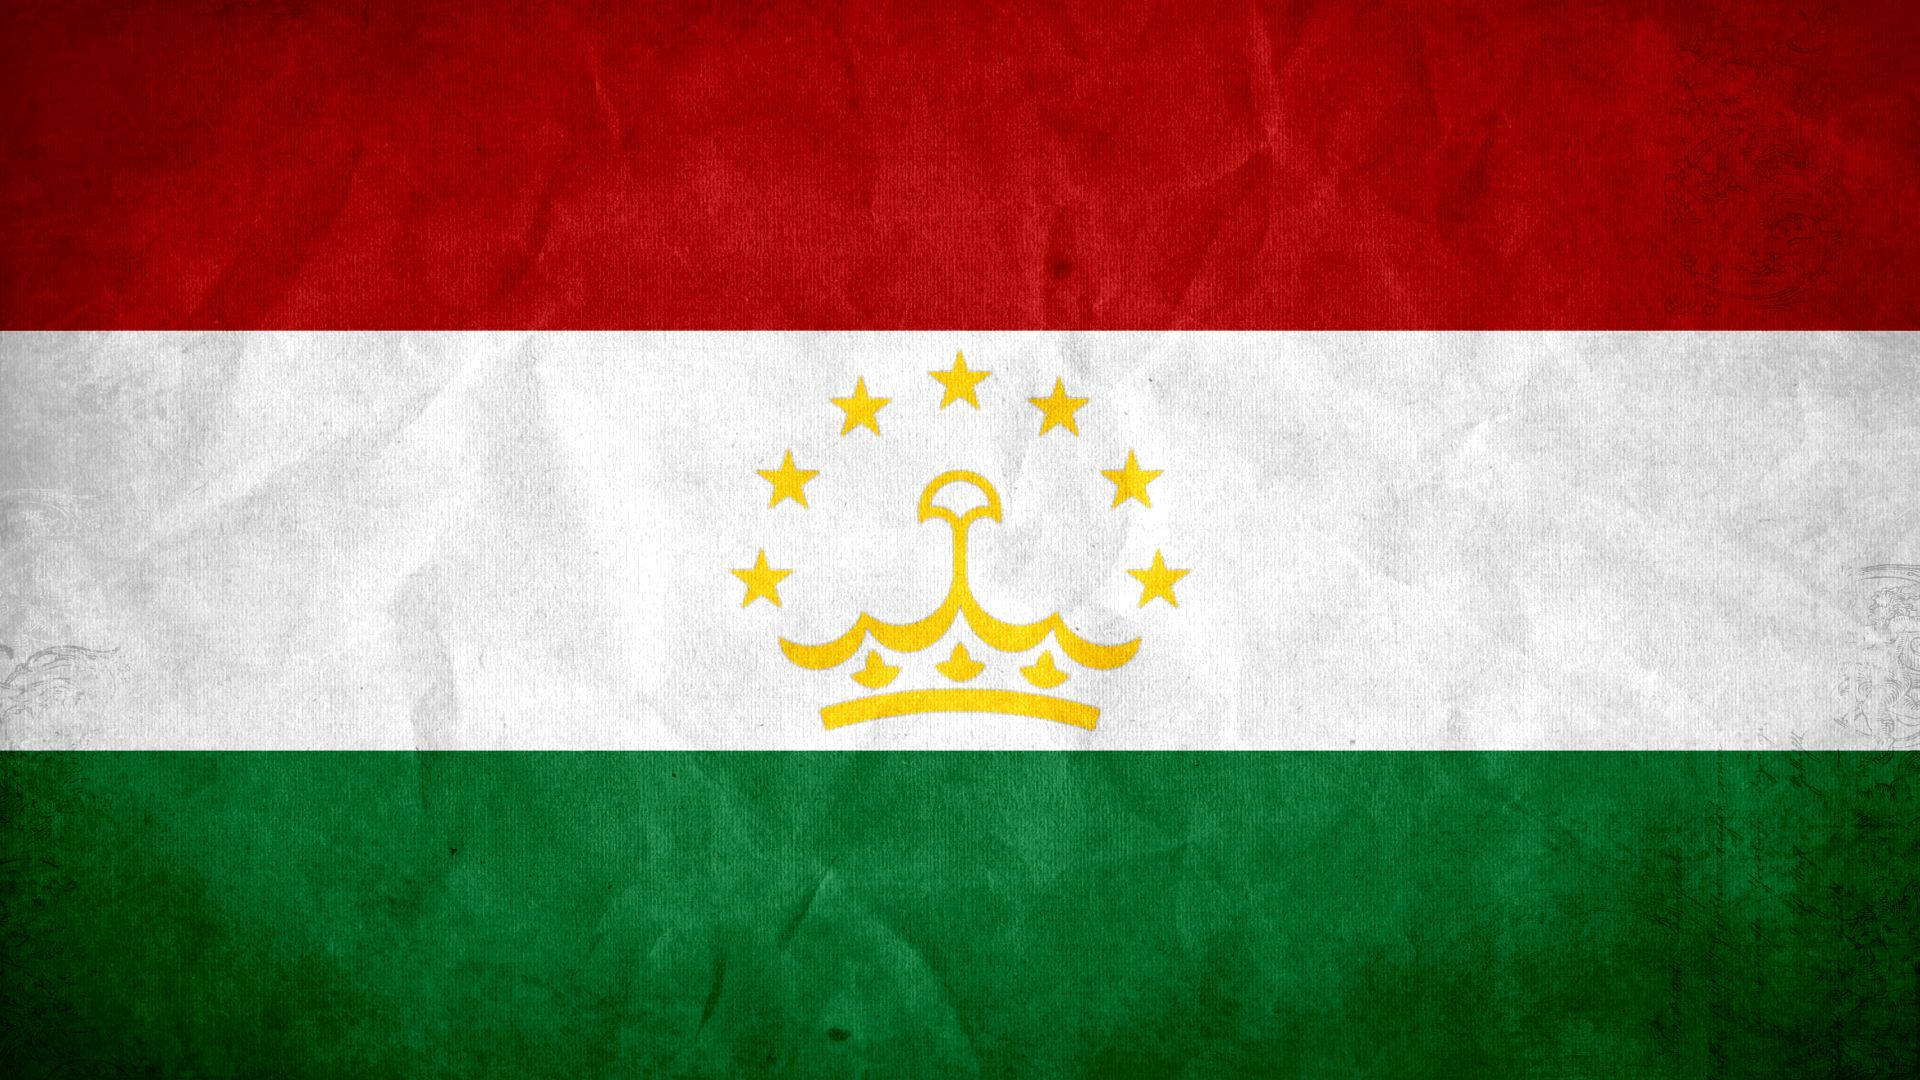 Tajikistánbandera Nacional Del País Fondo de pantalla